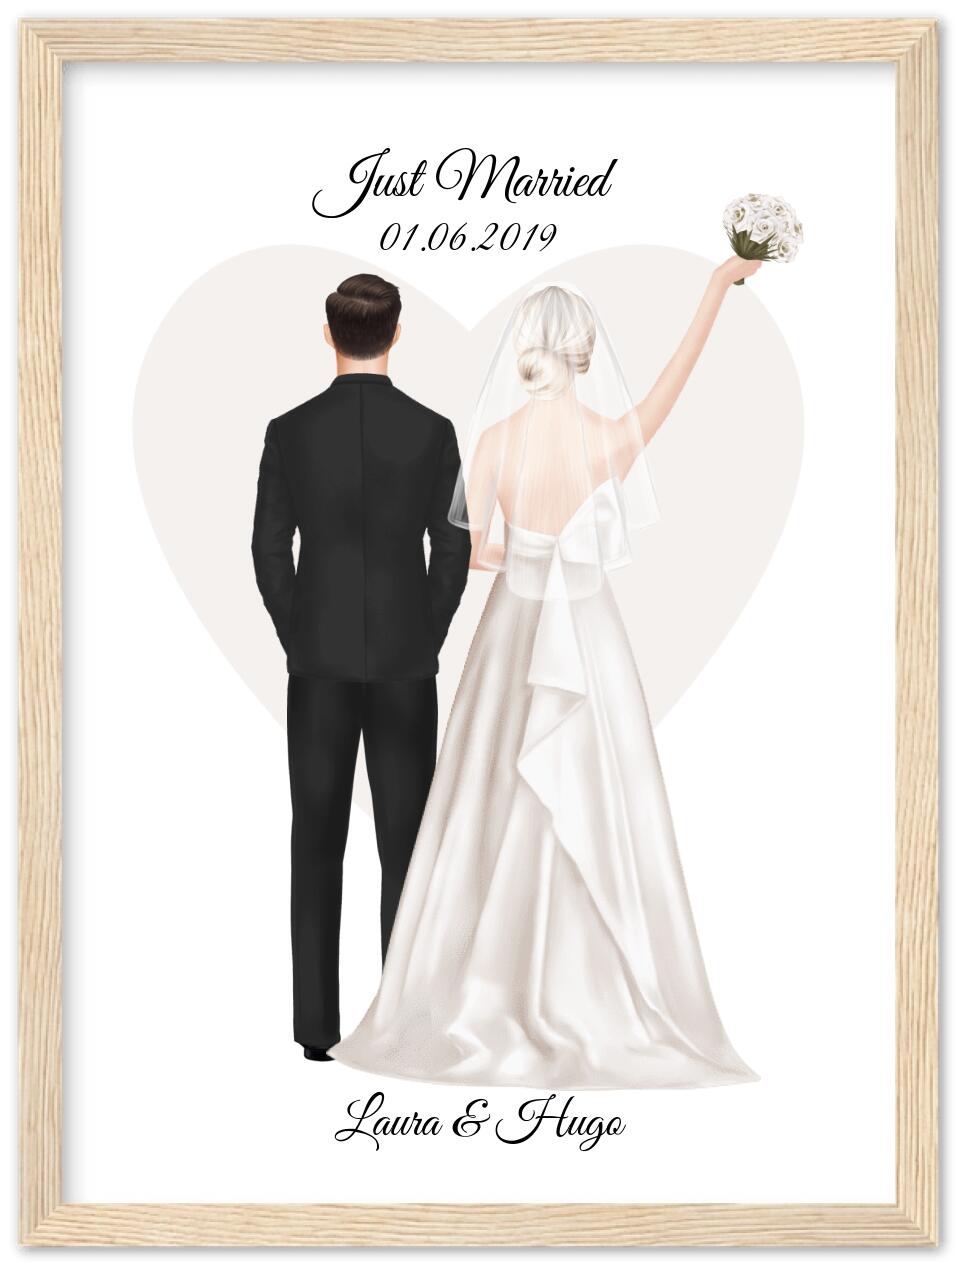 Personalisiertes Hochzeitsgeschenk - Hochzeitsbild mit Namen personalisiert - Geschenk zur Hochzeit - Hochzeitsgeschenkidee